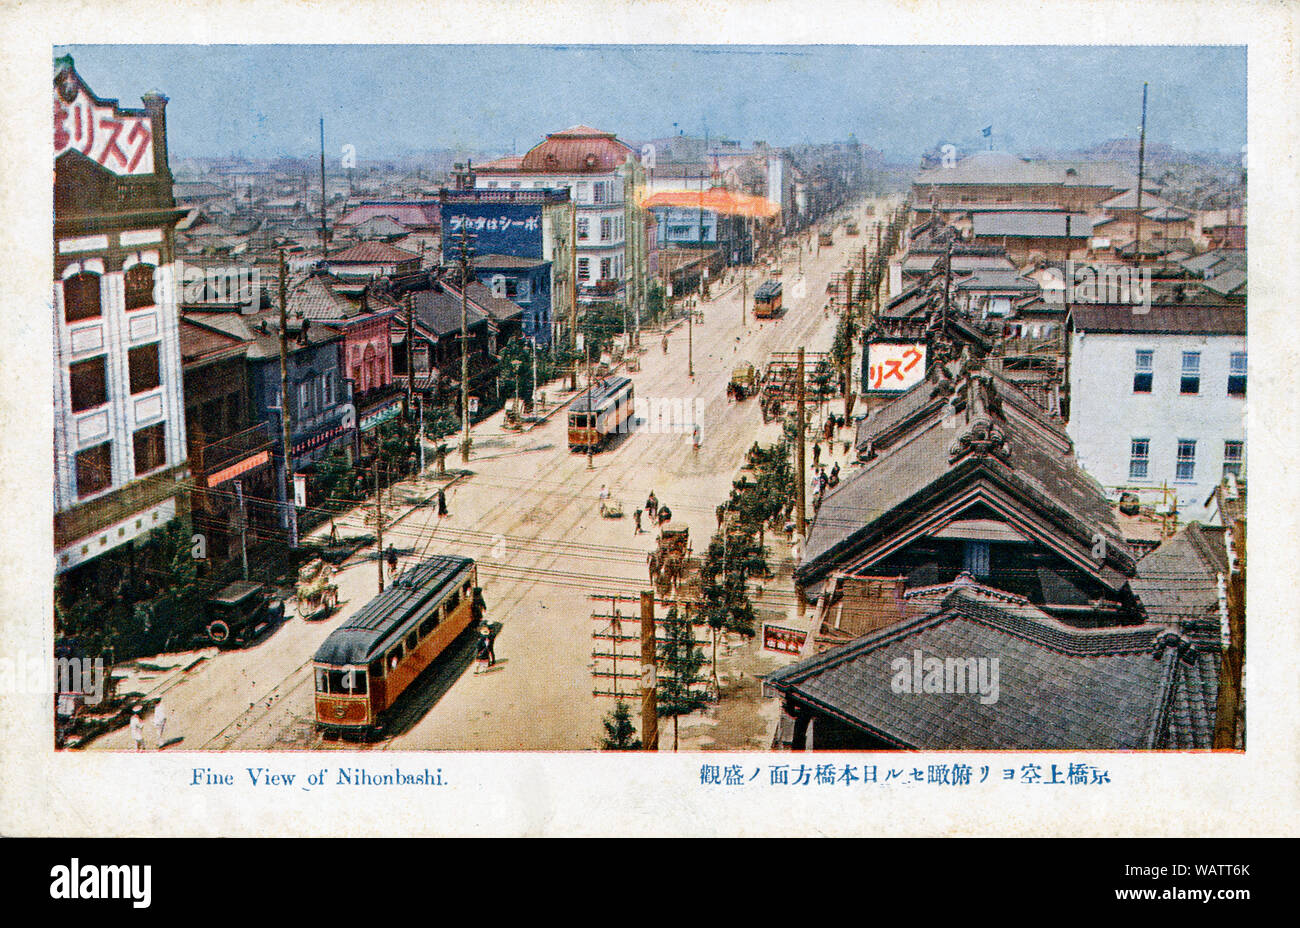 [1920s Japan - Straßenbahnen in Kyobashi, Tokio] - Straßenbahnen in Kyobashi, Tokio, auf der Suche nach Nihonbashi Brücke. Einige Straßenbahnen sind sichtbar. 20. jahrhundert alte Ansichtskarte. Stockfoto